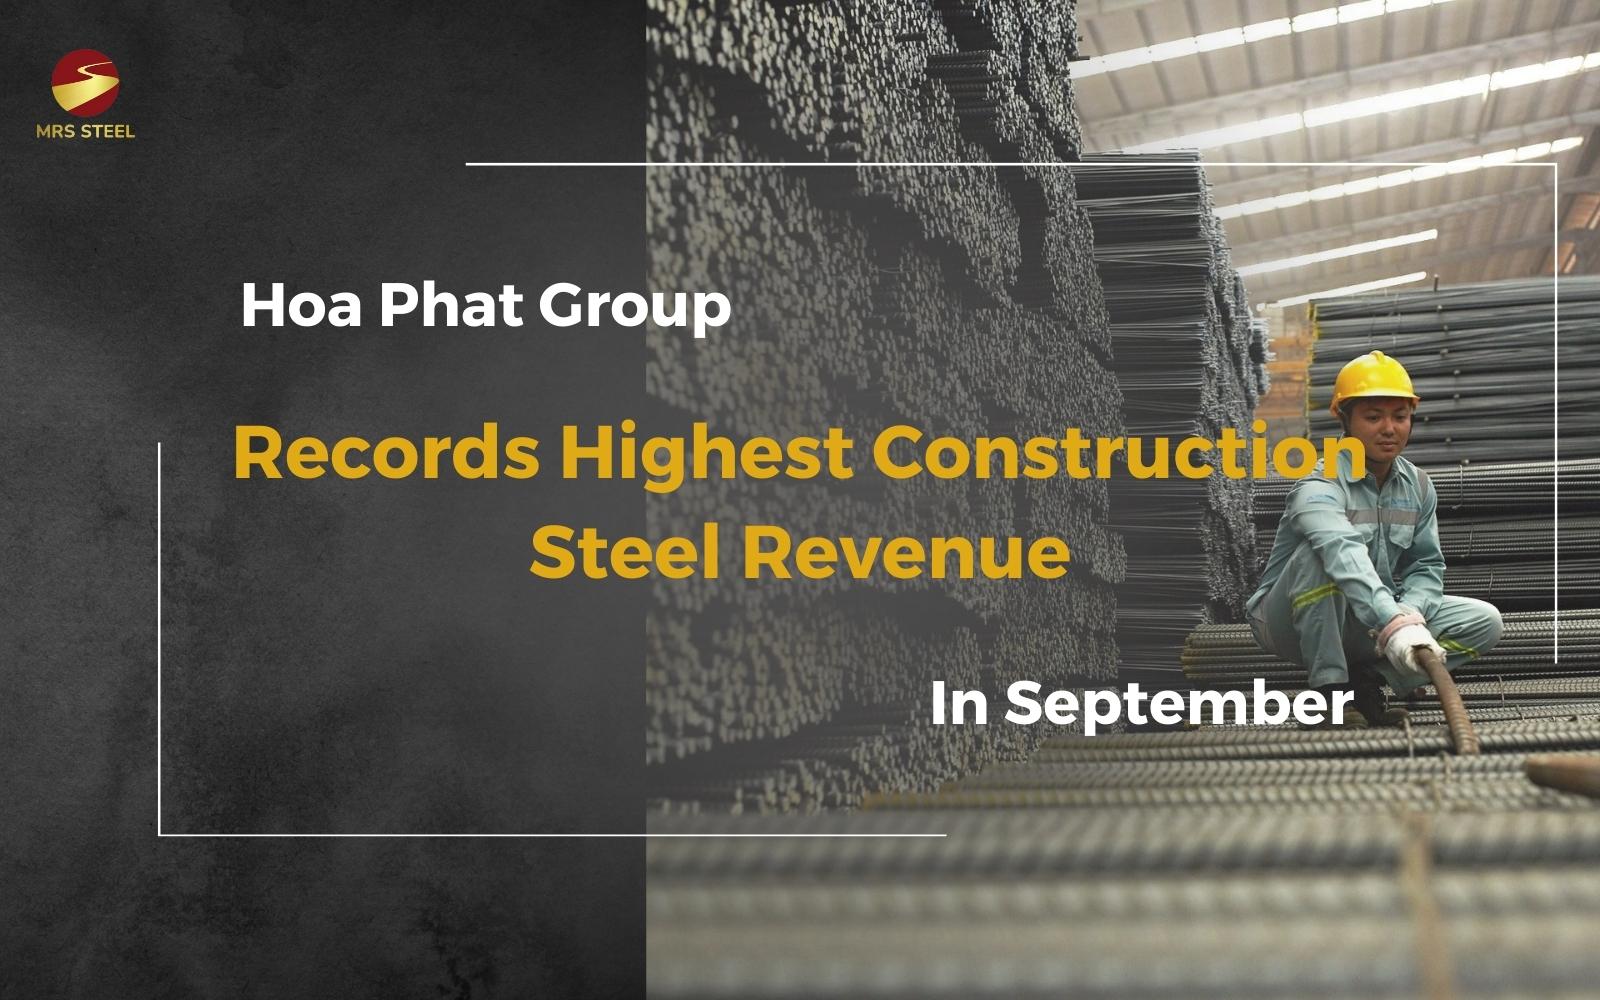 Hoa Phat Group Records Highest Construction Steel Revenue in September